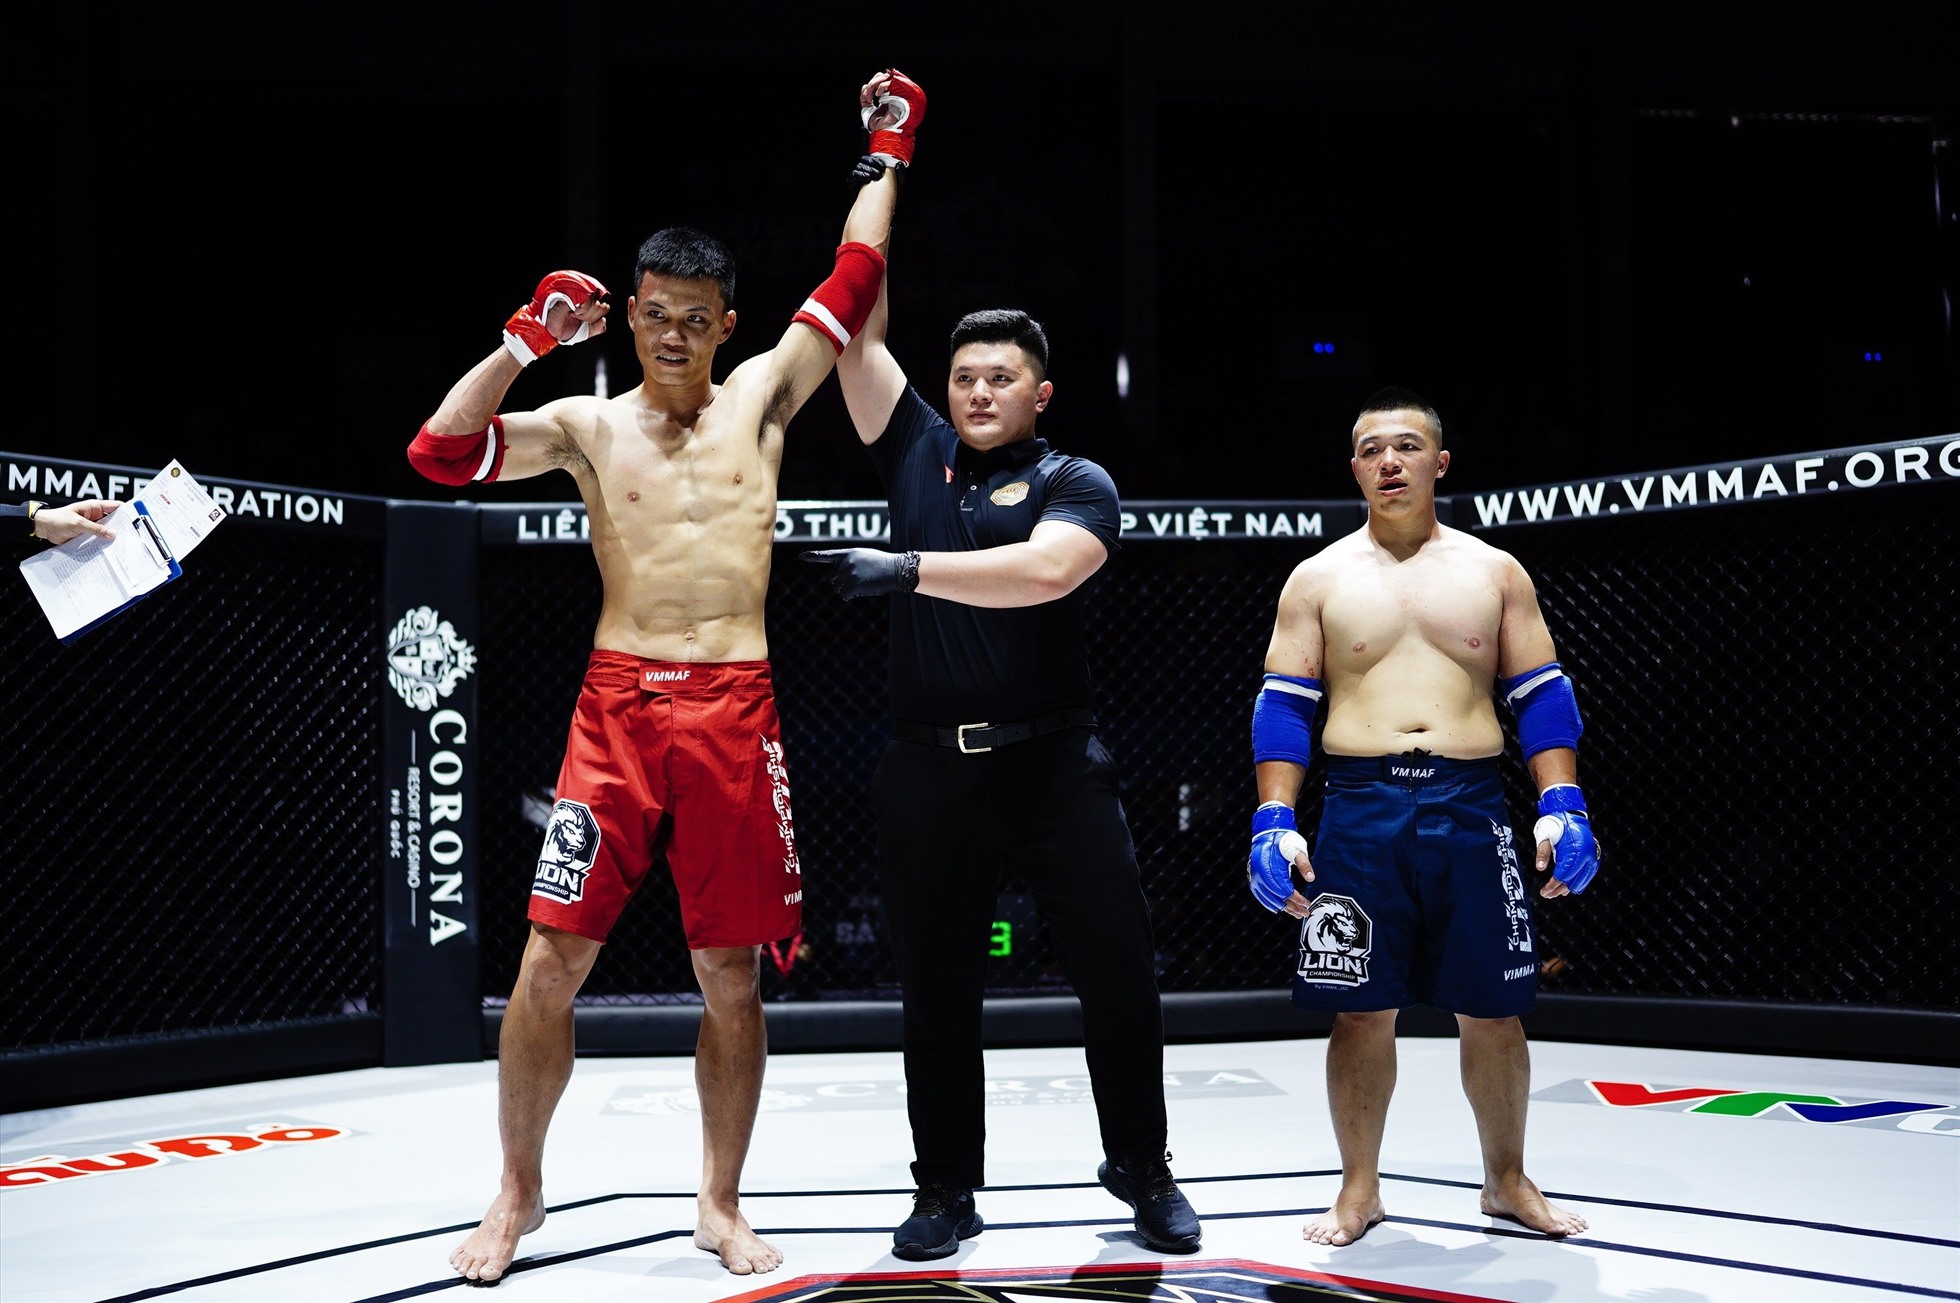 Ở hạng 84kg nam, Phạm Công Minh (đỏ) thắng Cao Việt Anh (xanh) bằng knock-out kĩ thuật. Sau 2 phút 57 giây hiệp 1, bác sĩ thông báo võ sĩ Cao Việt Anh không còn khả năng thi đấu.